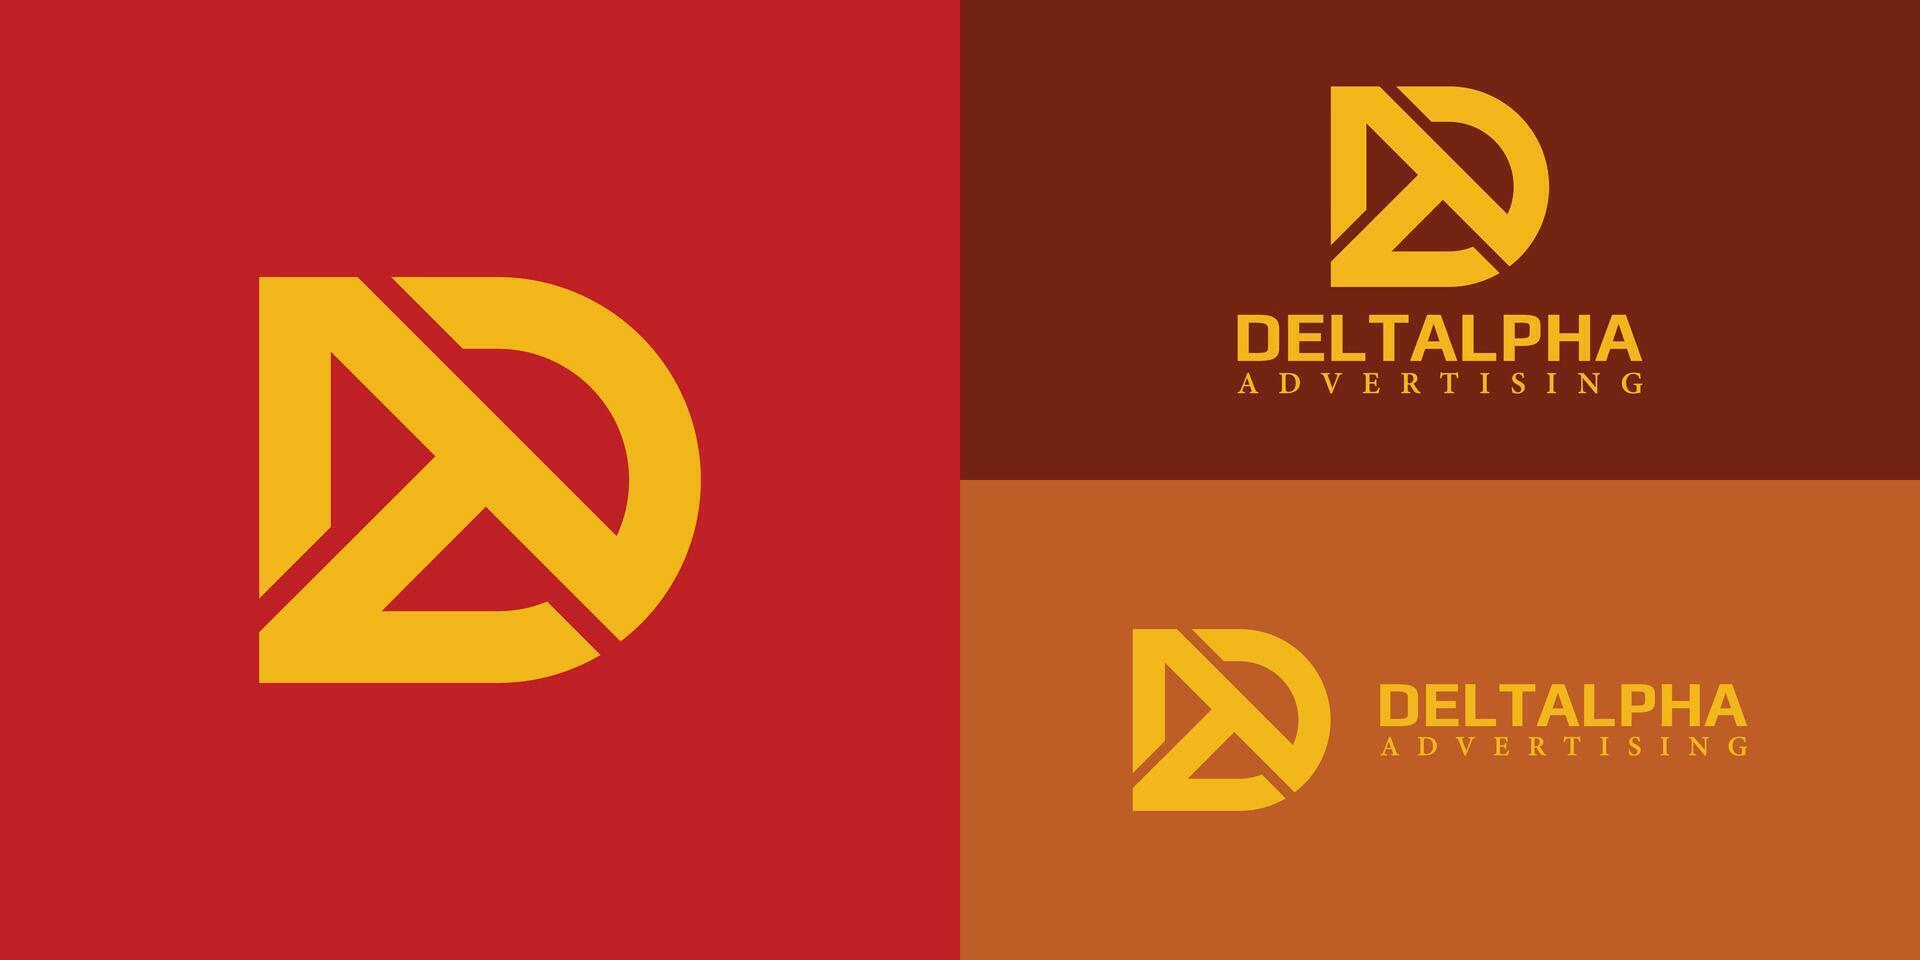 abstrakt första brev da eller ad logotyp i gul Färg isolerat på flera olika röd bakgrund färger. de logotyp är lämplig för reklam firmor eller digital marknadsföring företag ikon logotyp design mall vektor